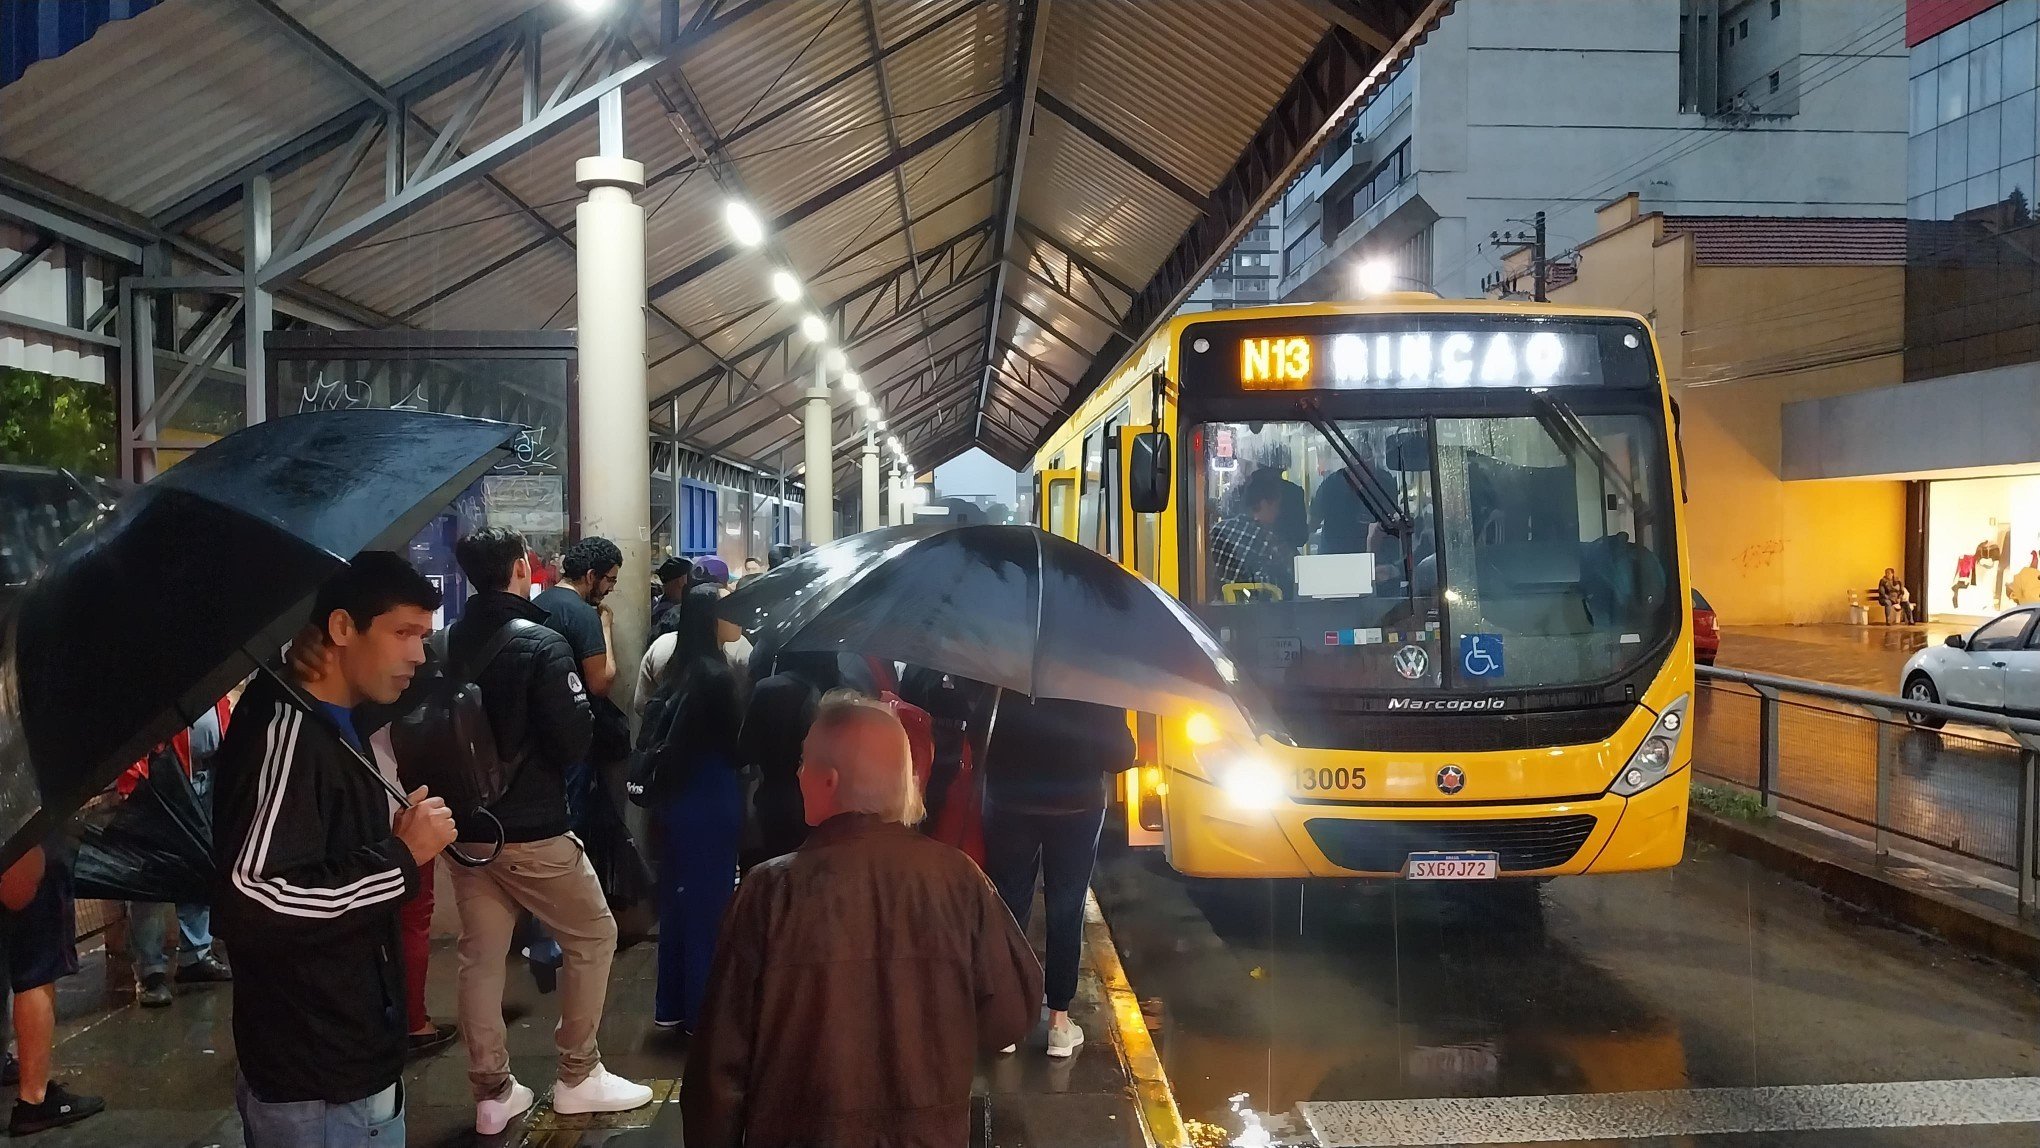 "Foram quase quatro horas de espera": Passageiro relata advertência no trabalho após atraso de ônibus em Novo Hamburgo